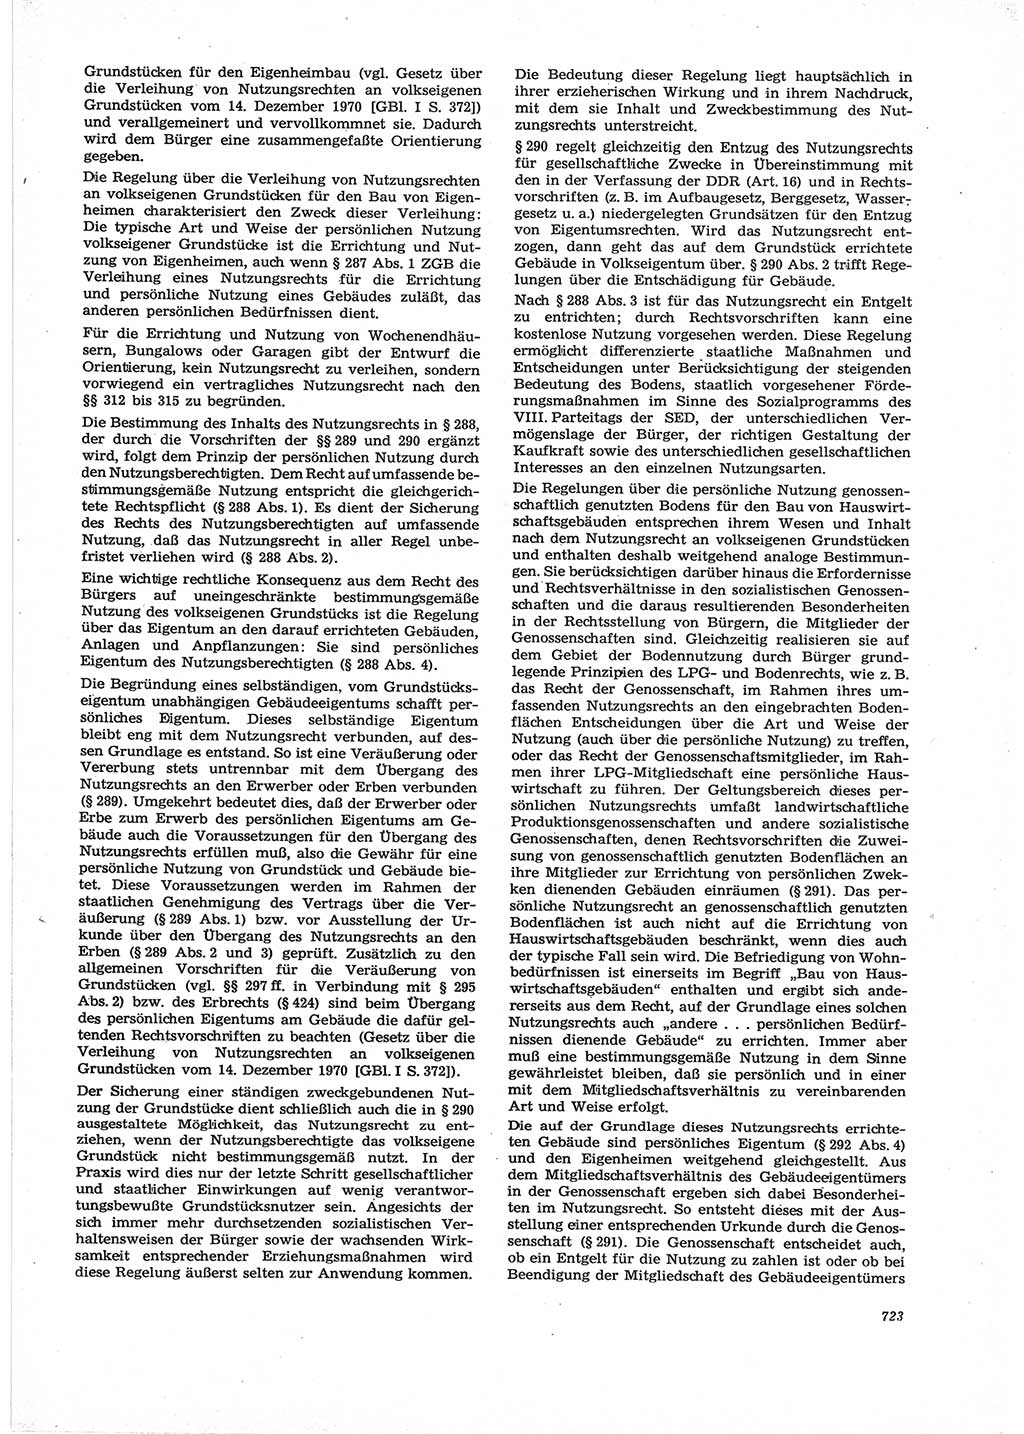 Neue Justiz (NJ), Zeitschrift für Recht und Rechtswissenschaft [Deutsche Demokratische Republik (DDR)], 28. Jahrgang 1974, Seite 723 (NJ DDR 1974, S. 723)